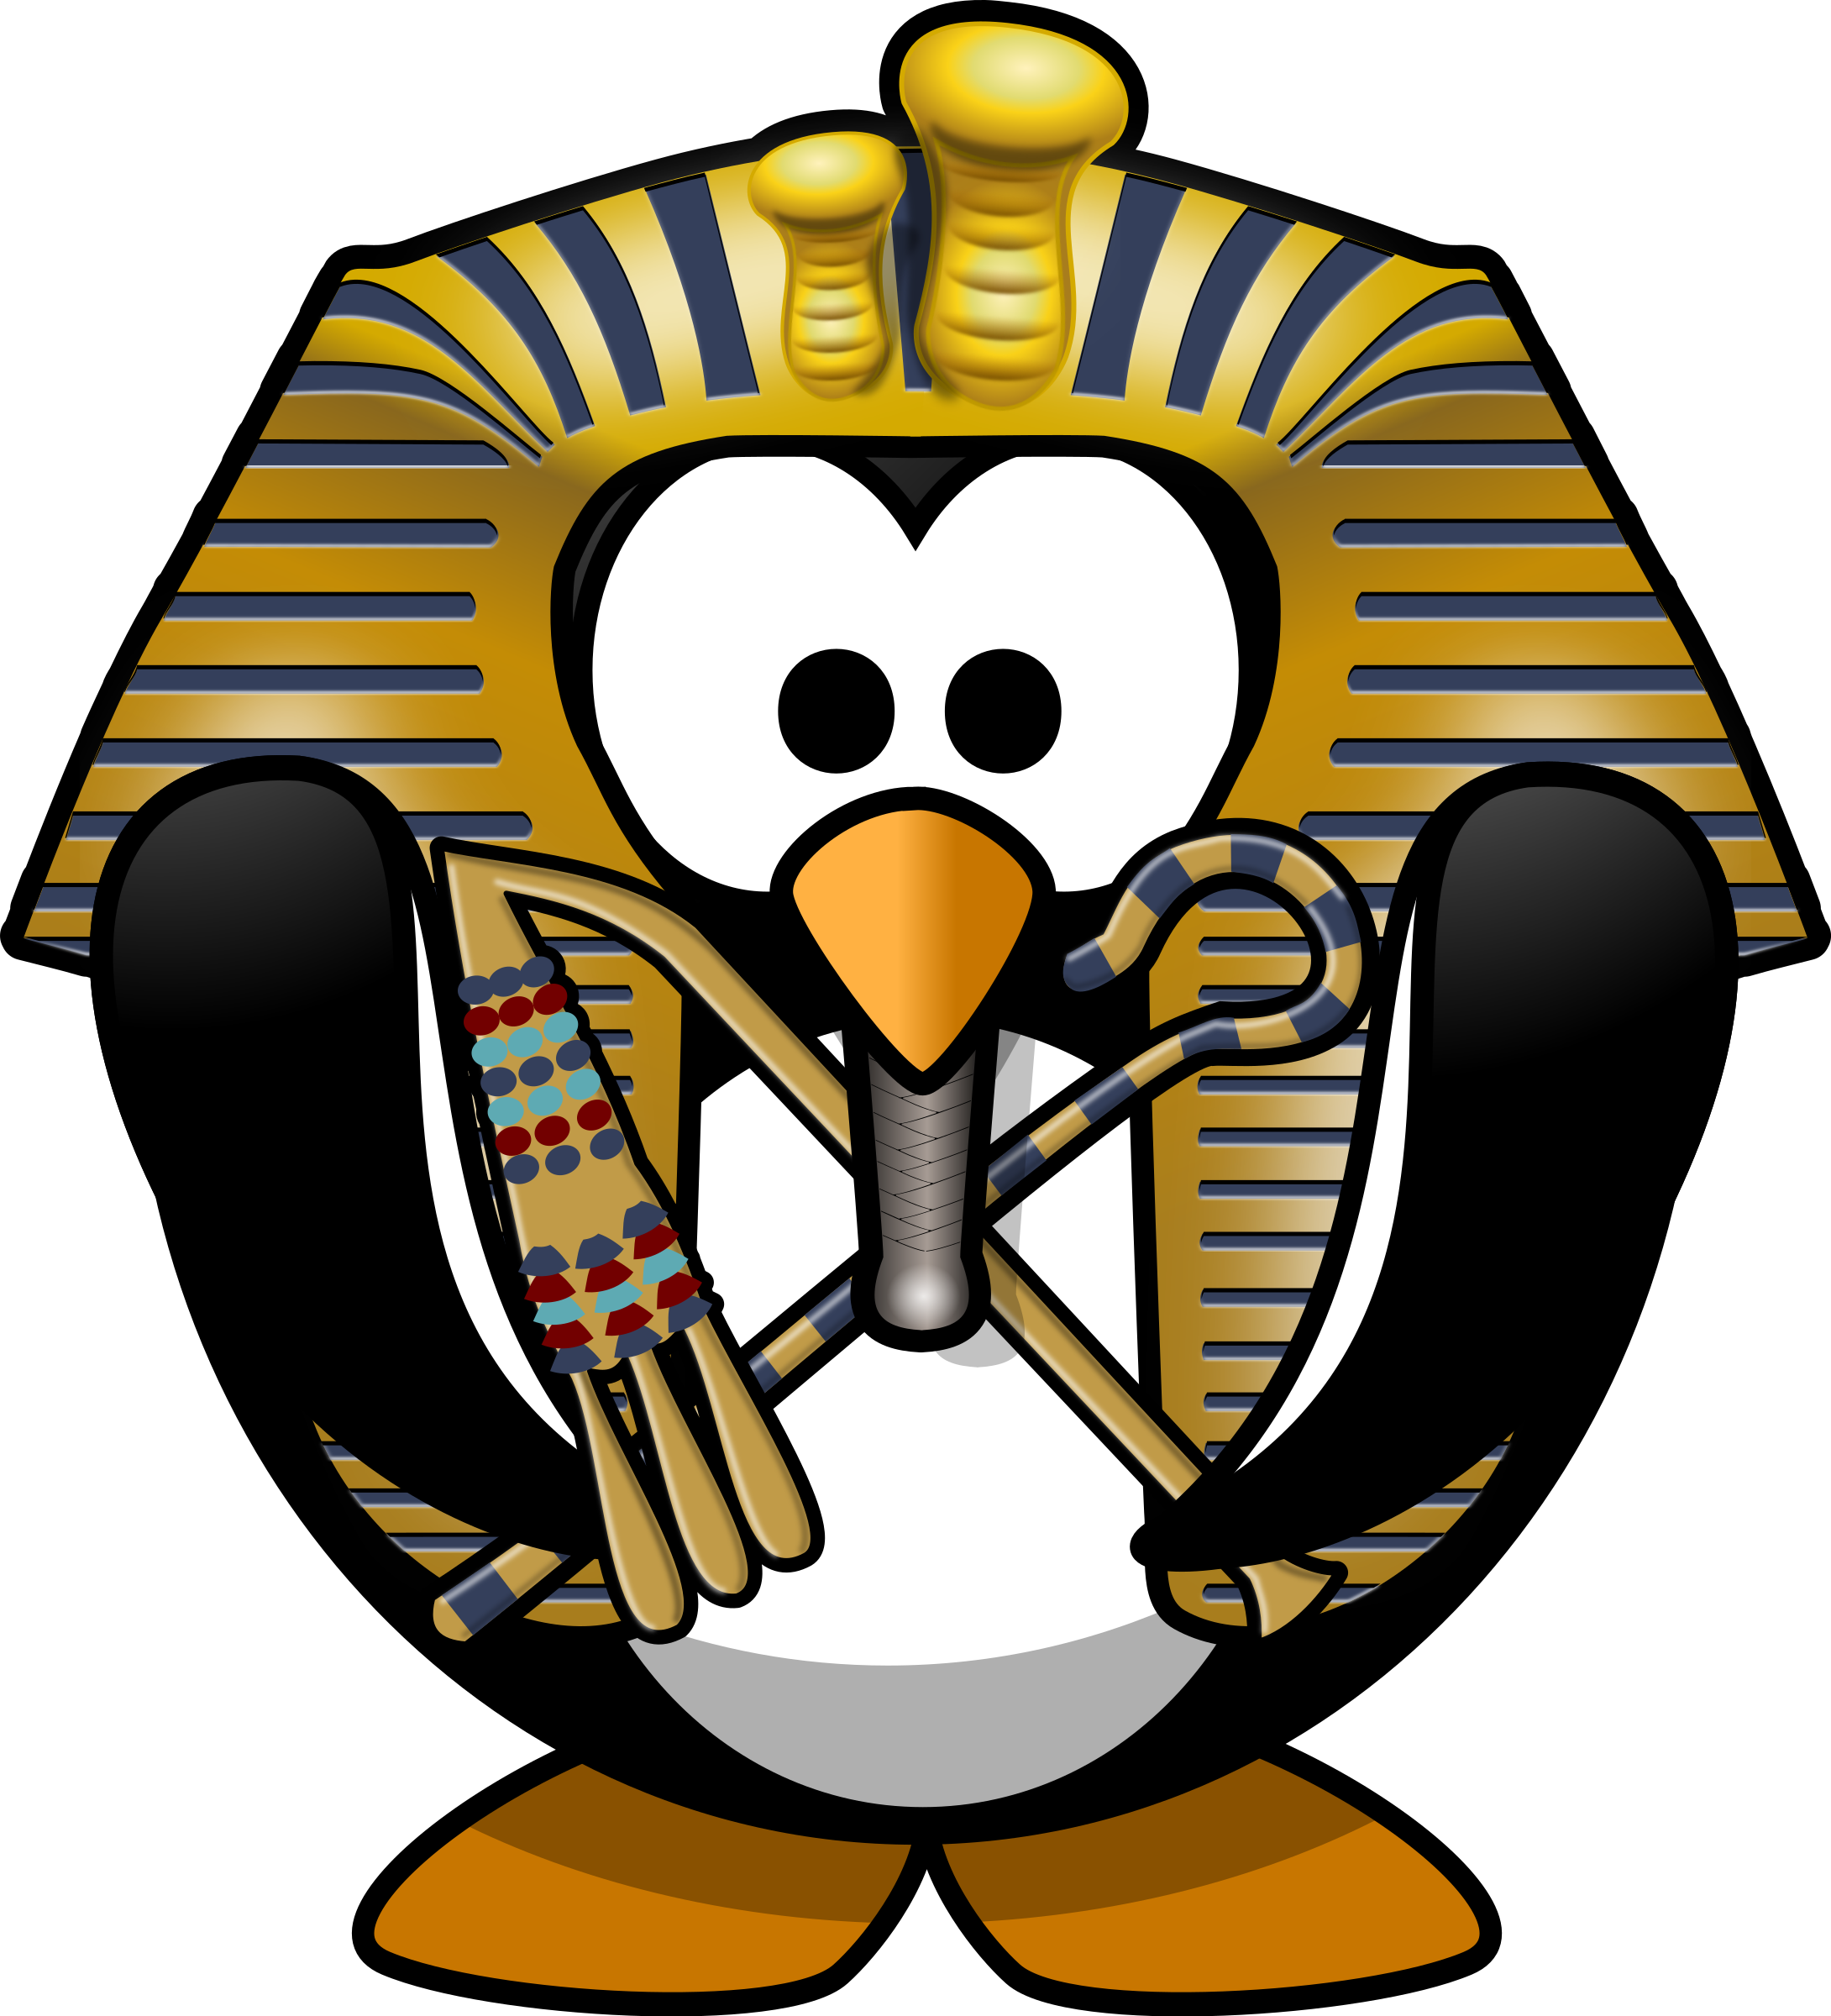 Tutankhamun clipart - ClipartFox